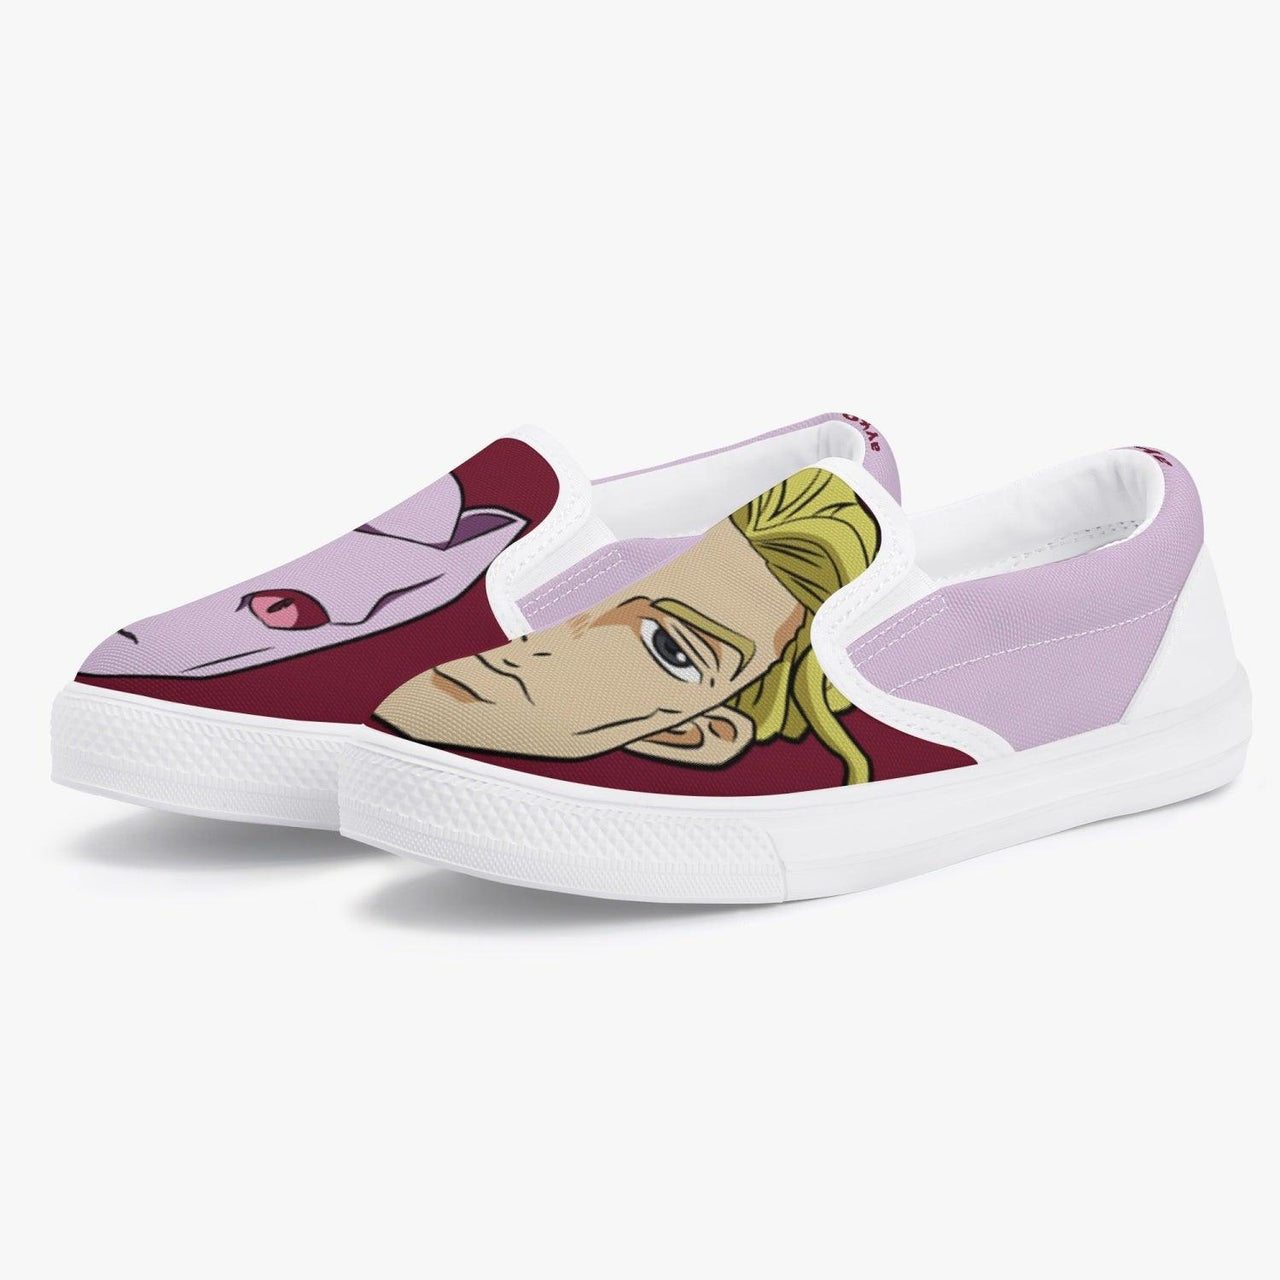 JoJo's Bizarre Adventure Kira Killer Queen Kids Slipons Anime Shoes _ JoJo's Bizarre Adventure _ Ayuko